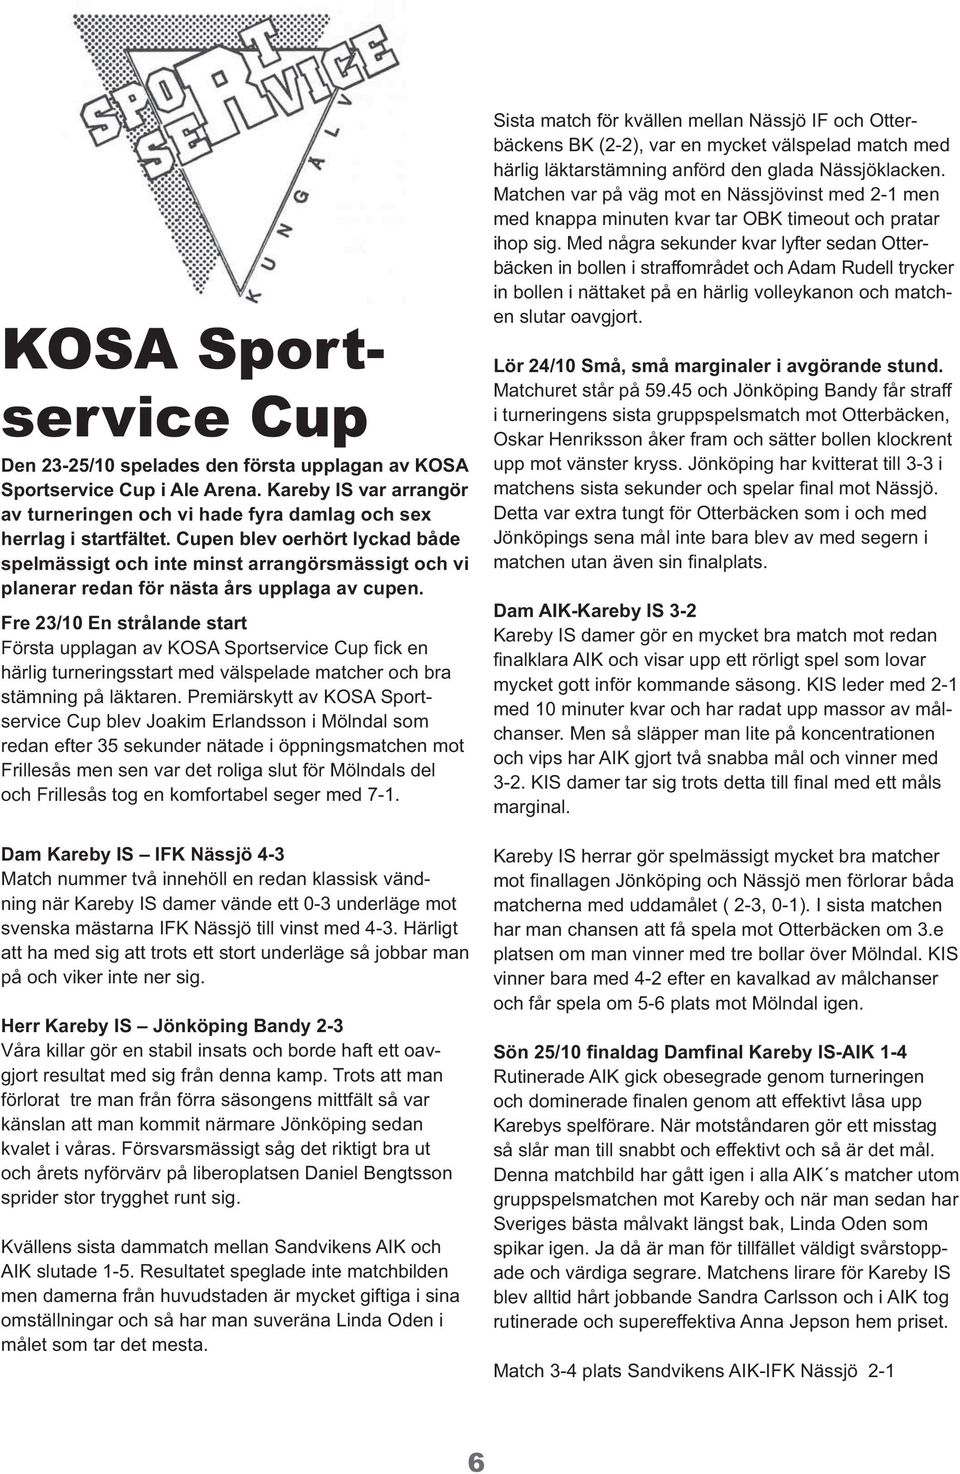 Fre 23/10 En strålande start Första upplagan av KOSA Sportservice Cup fick en härlig turneringsstart med välspelade matcher och bra stämning på läktaren.